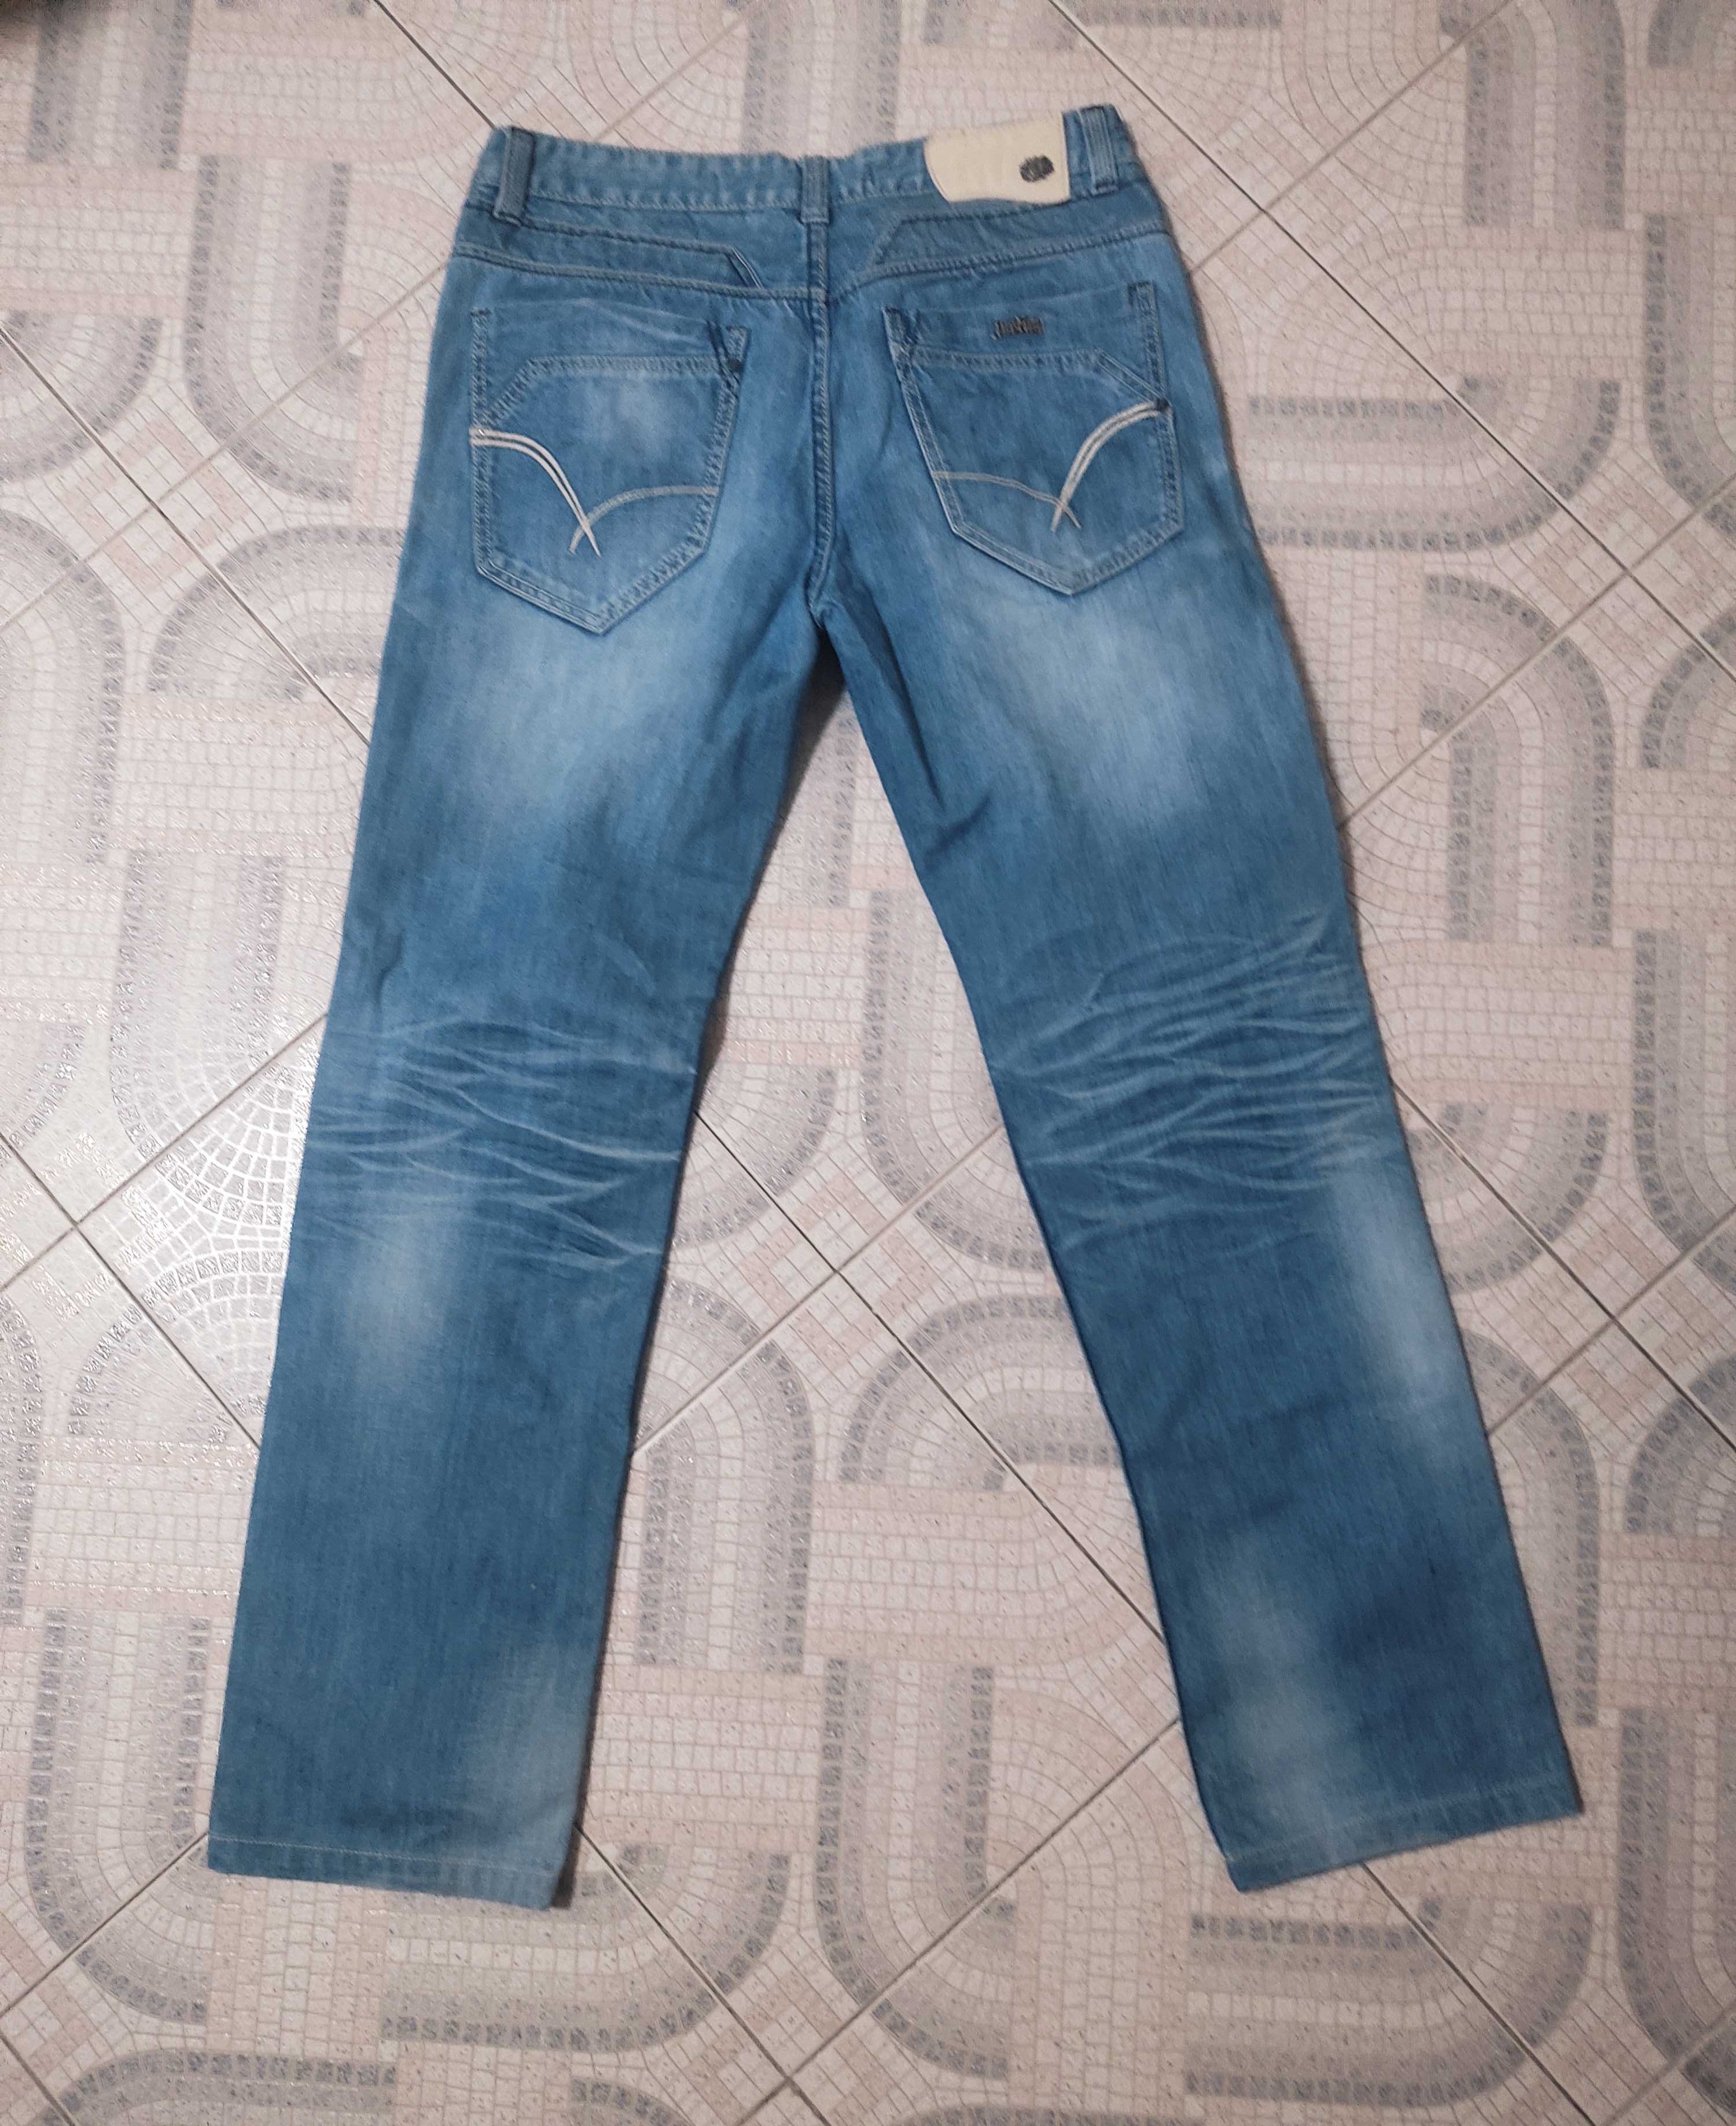 Calças justing,jeans cor azul